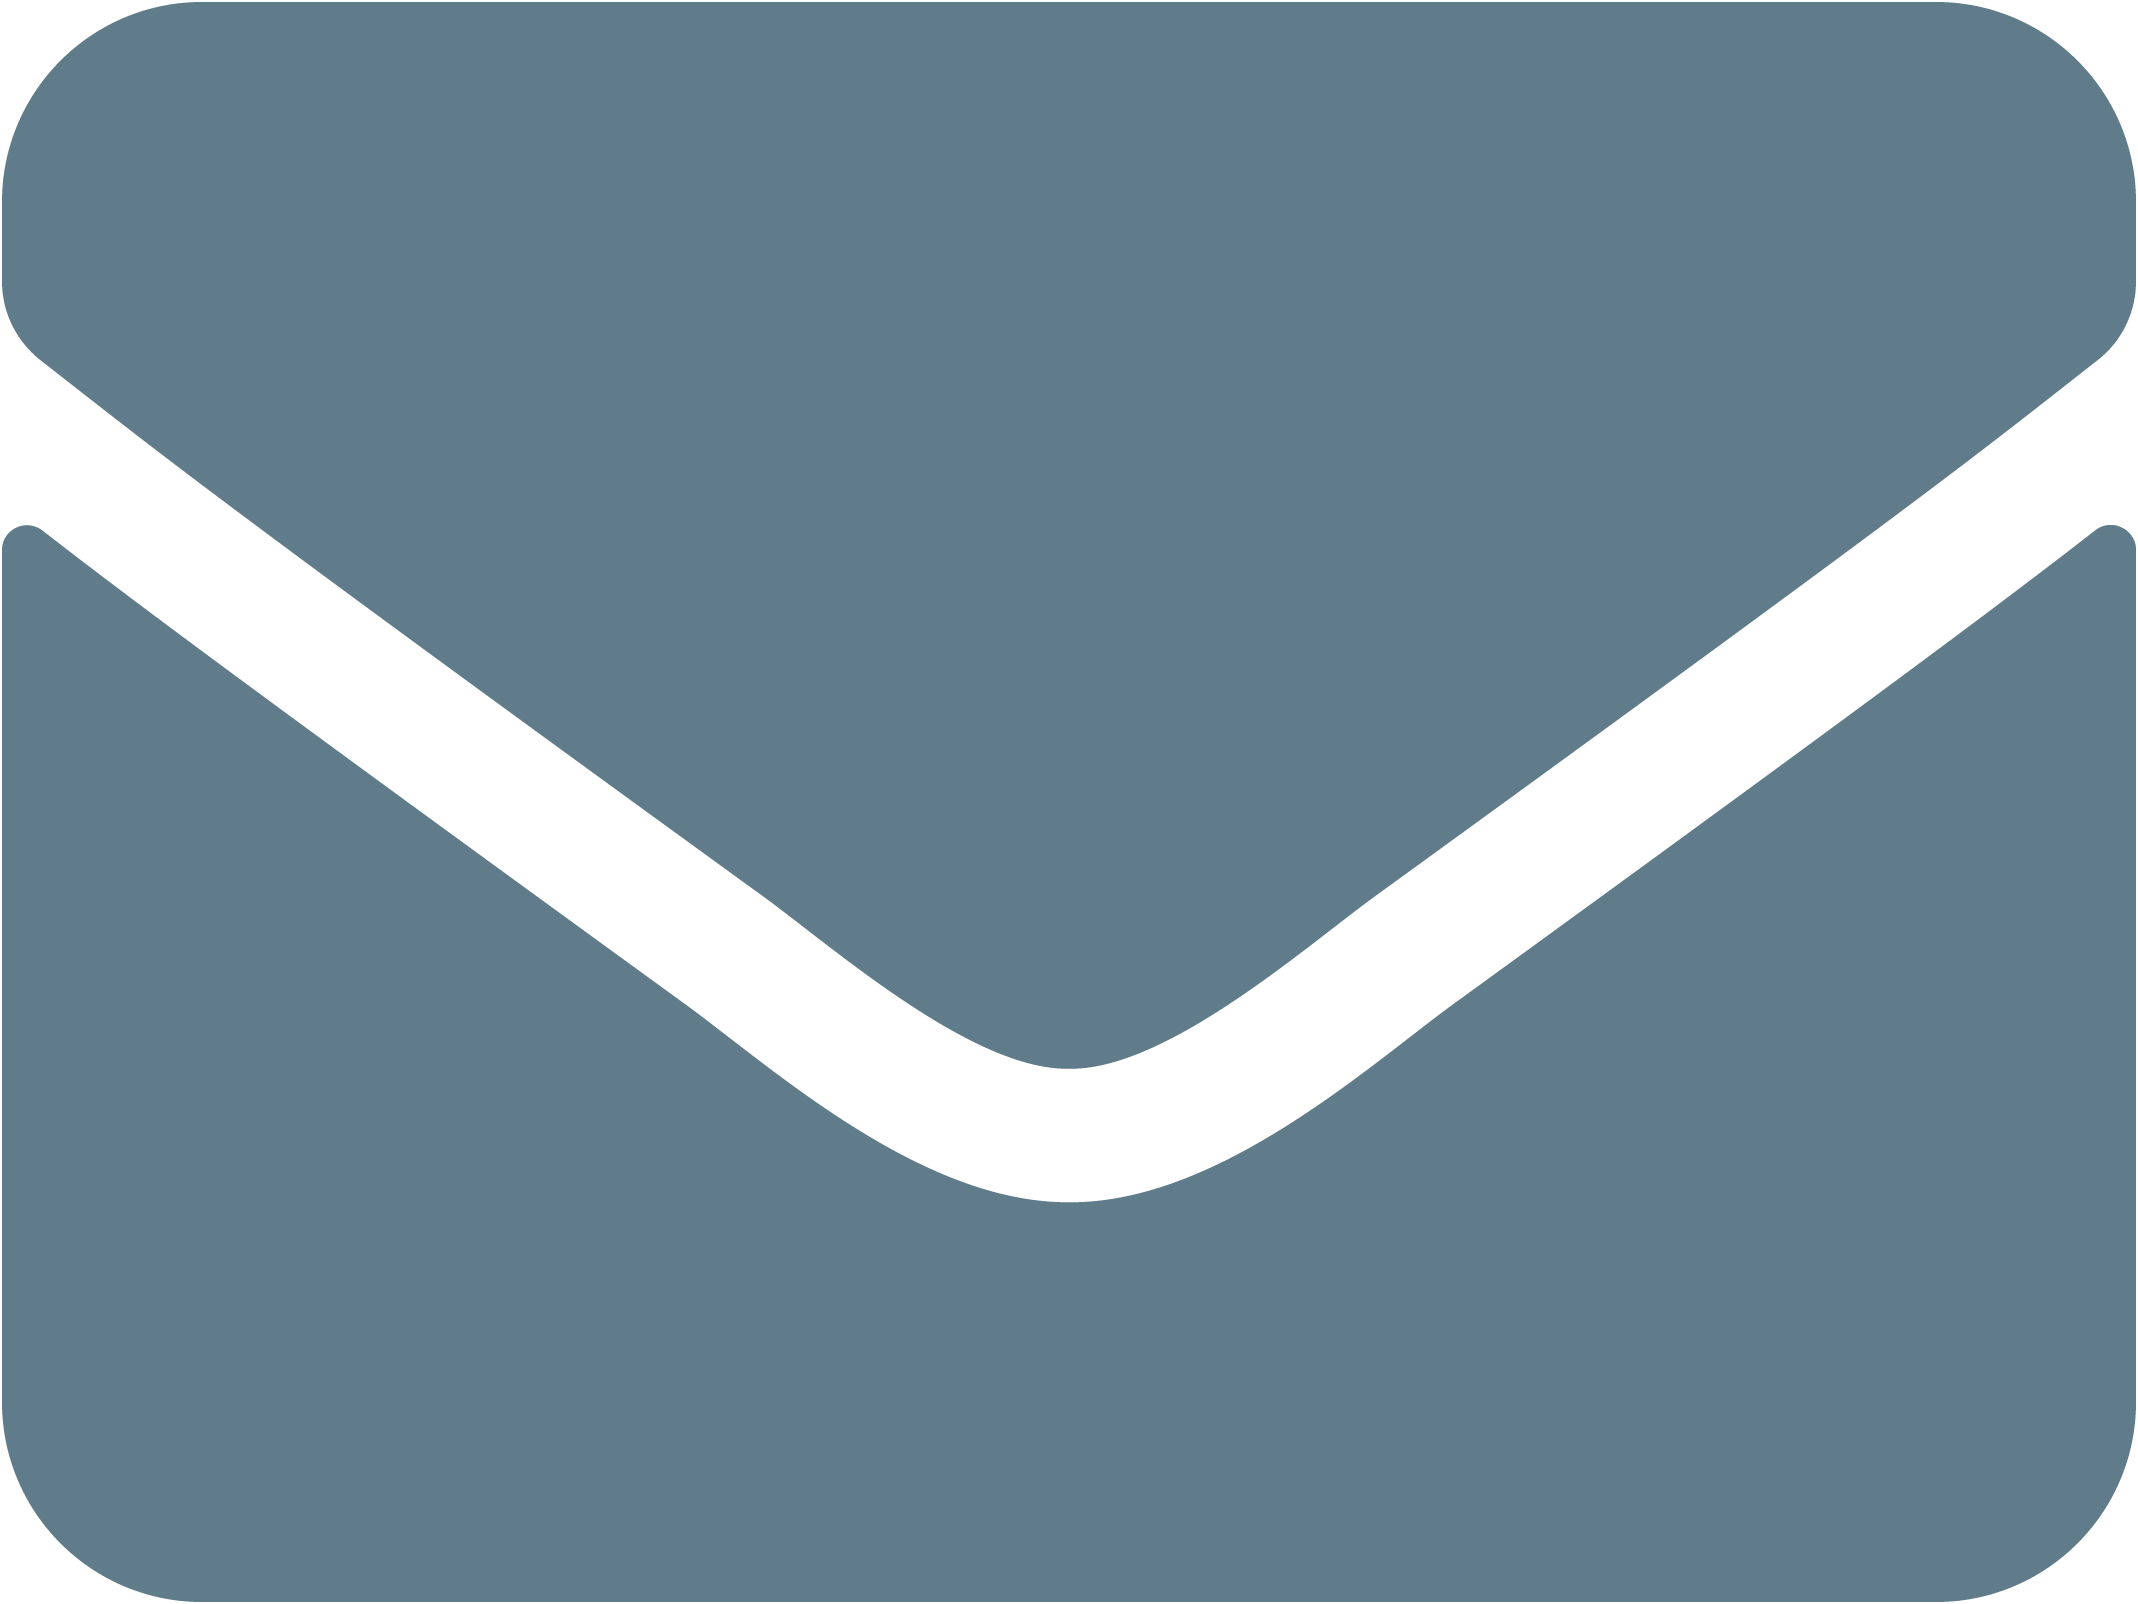 pictogramme d'une enveloppe